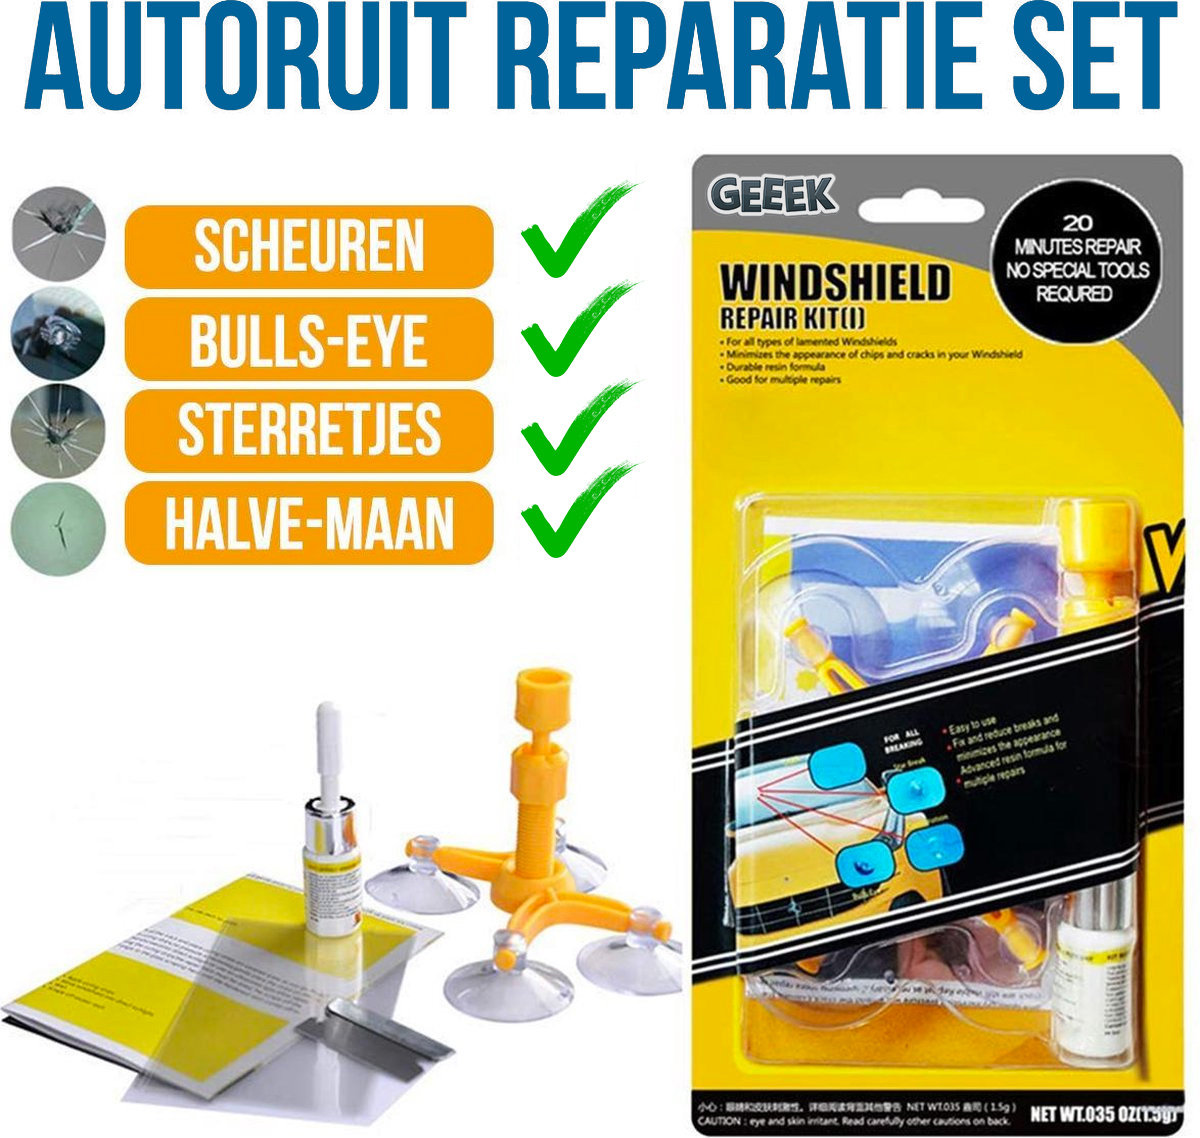 Autoruit Reparatie Set - Zelf je Autoruit Repareren - Met Nederlandse Gebruiksaanwijzing